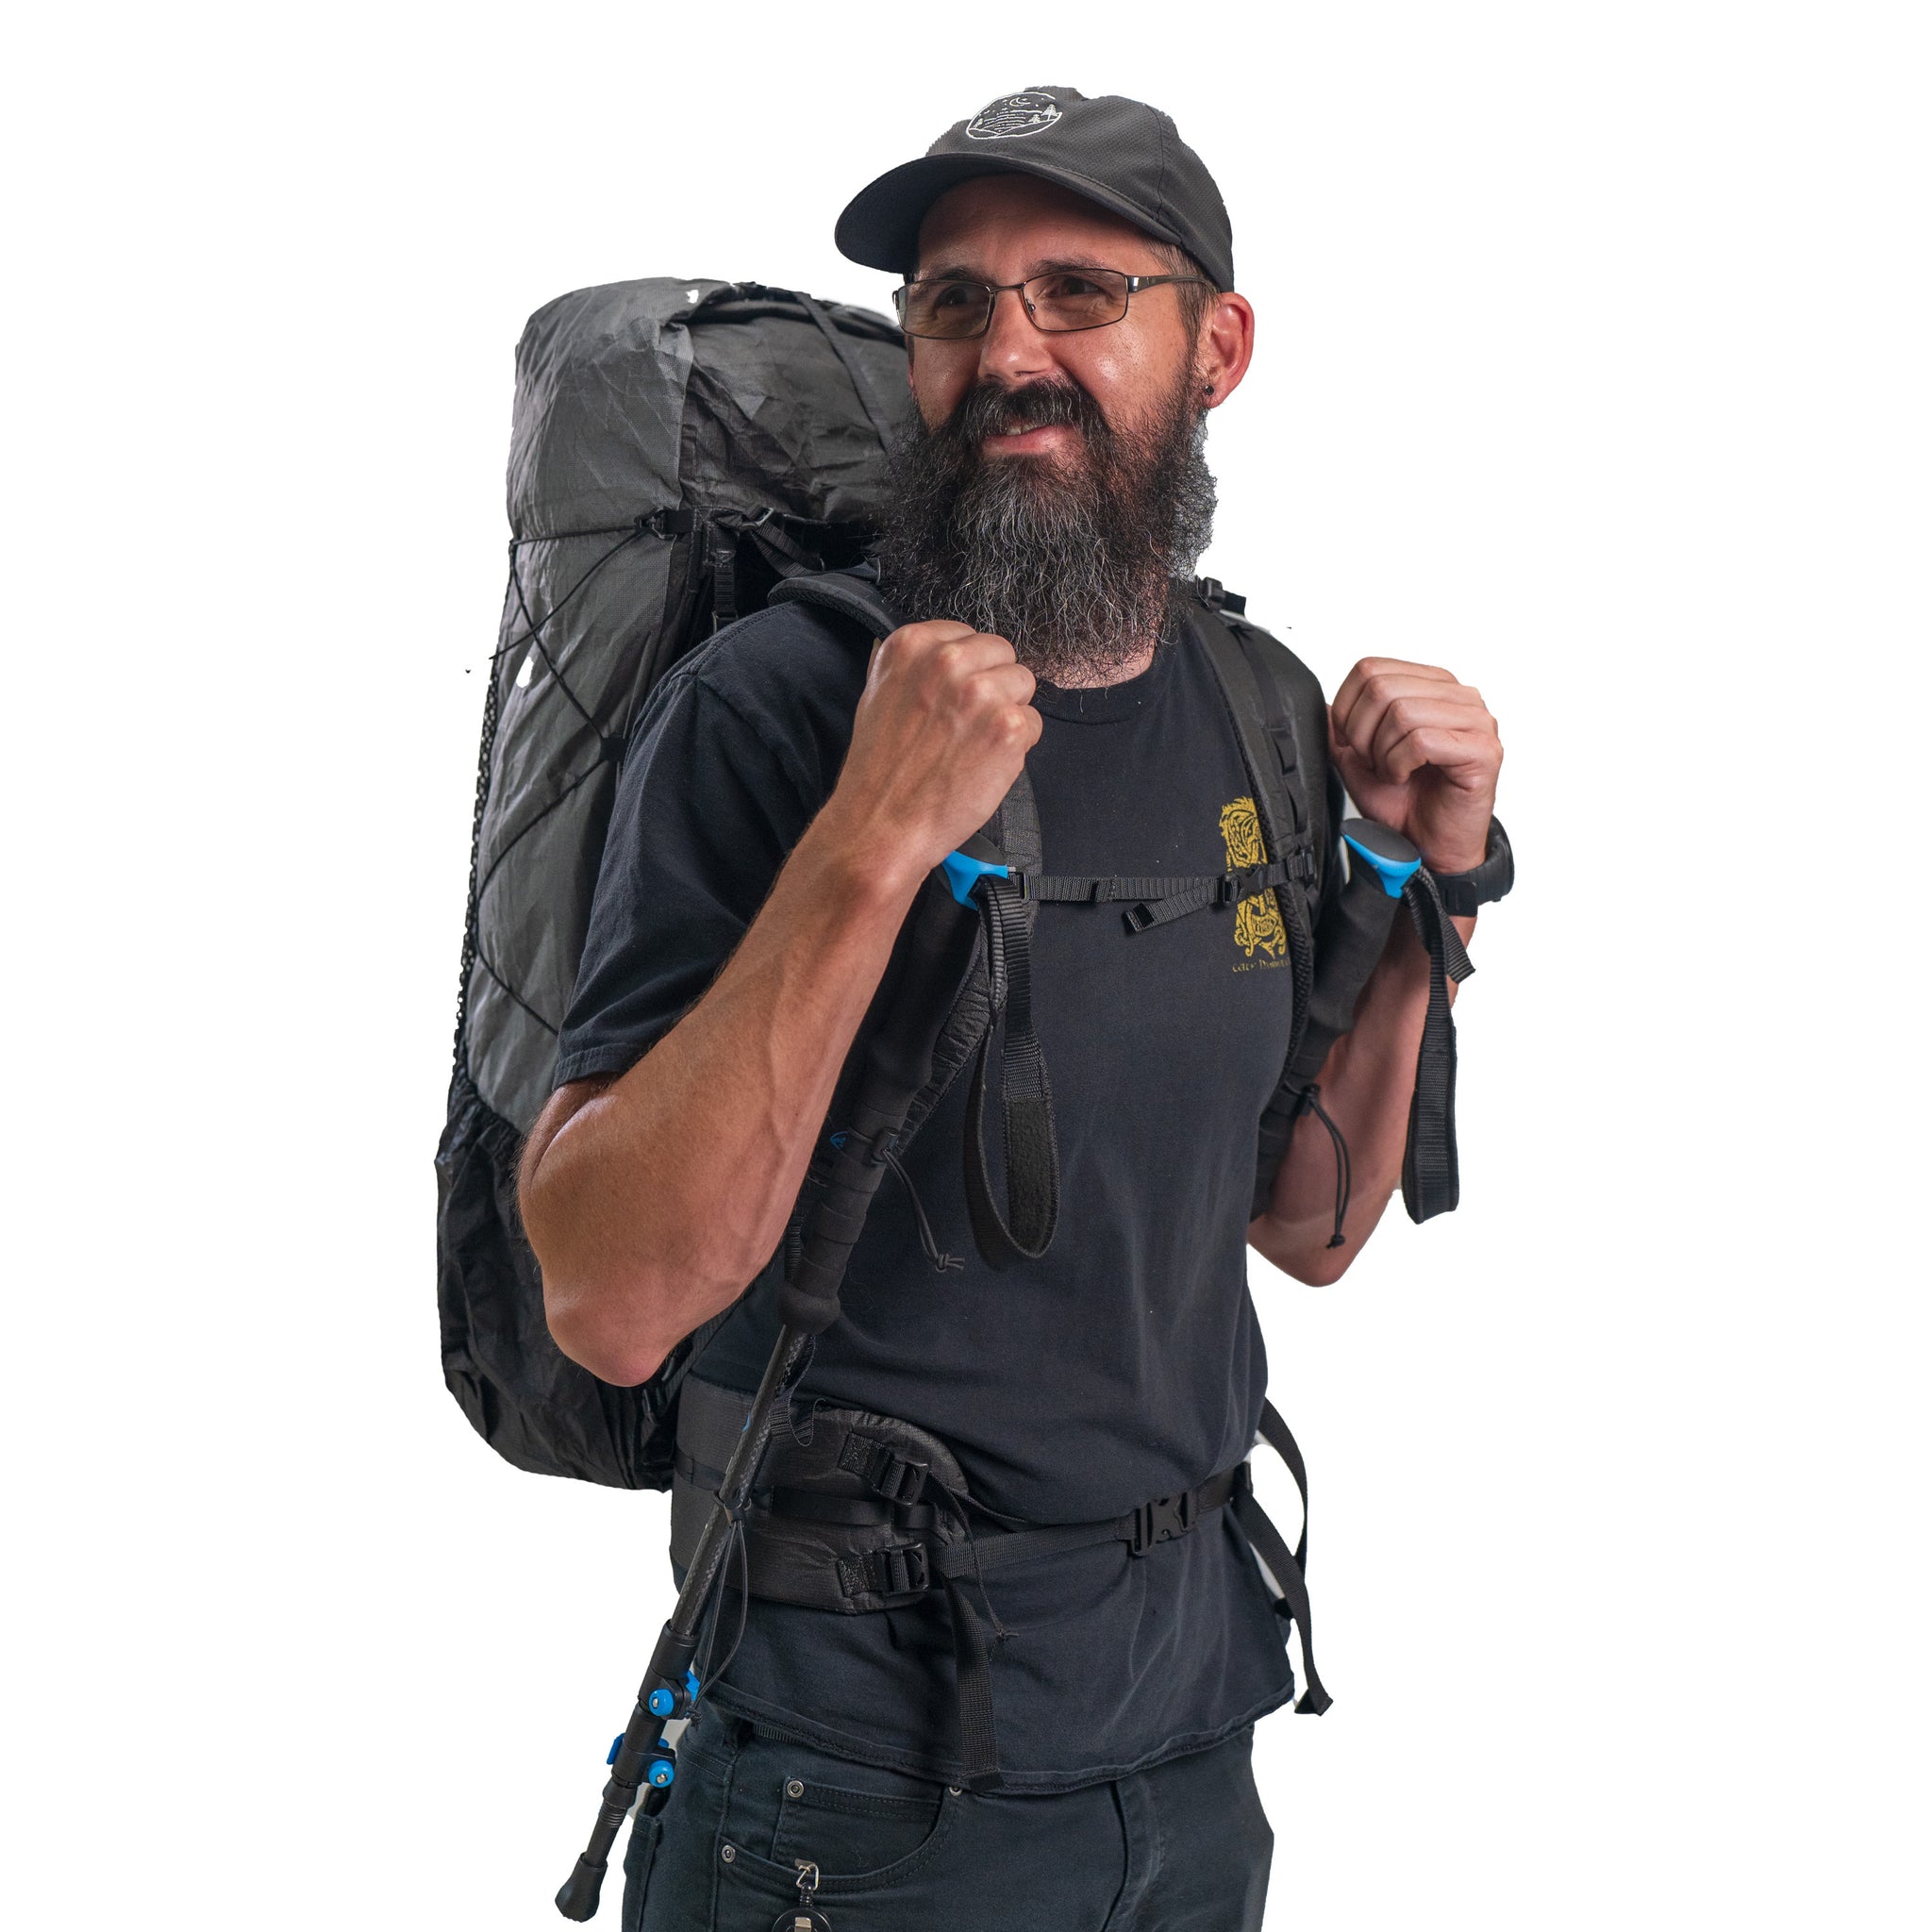 Ultralight Trekking Pole Holsters  Lightest Backpacking & Hiking